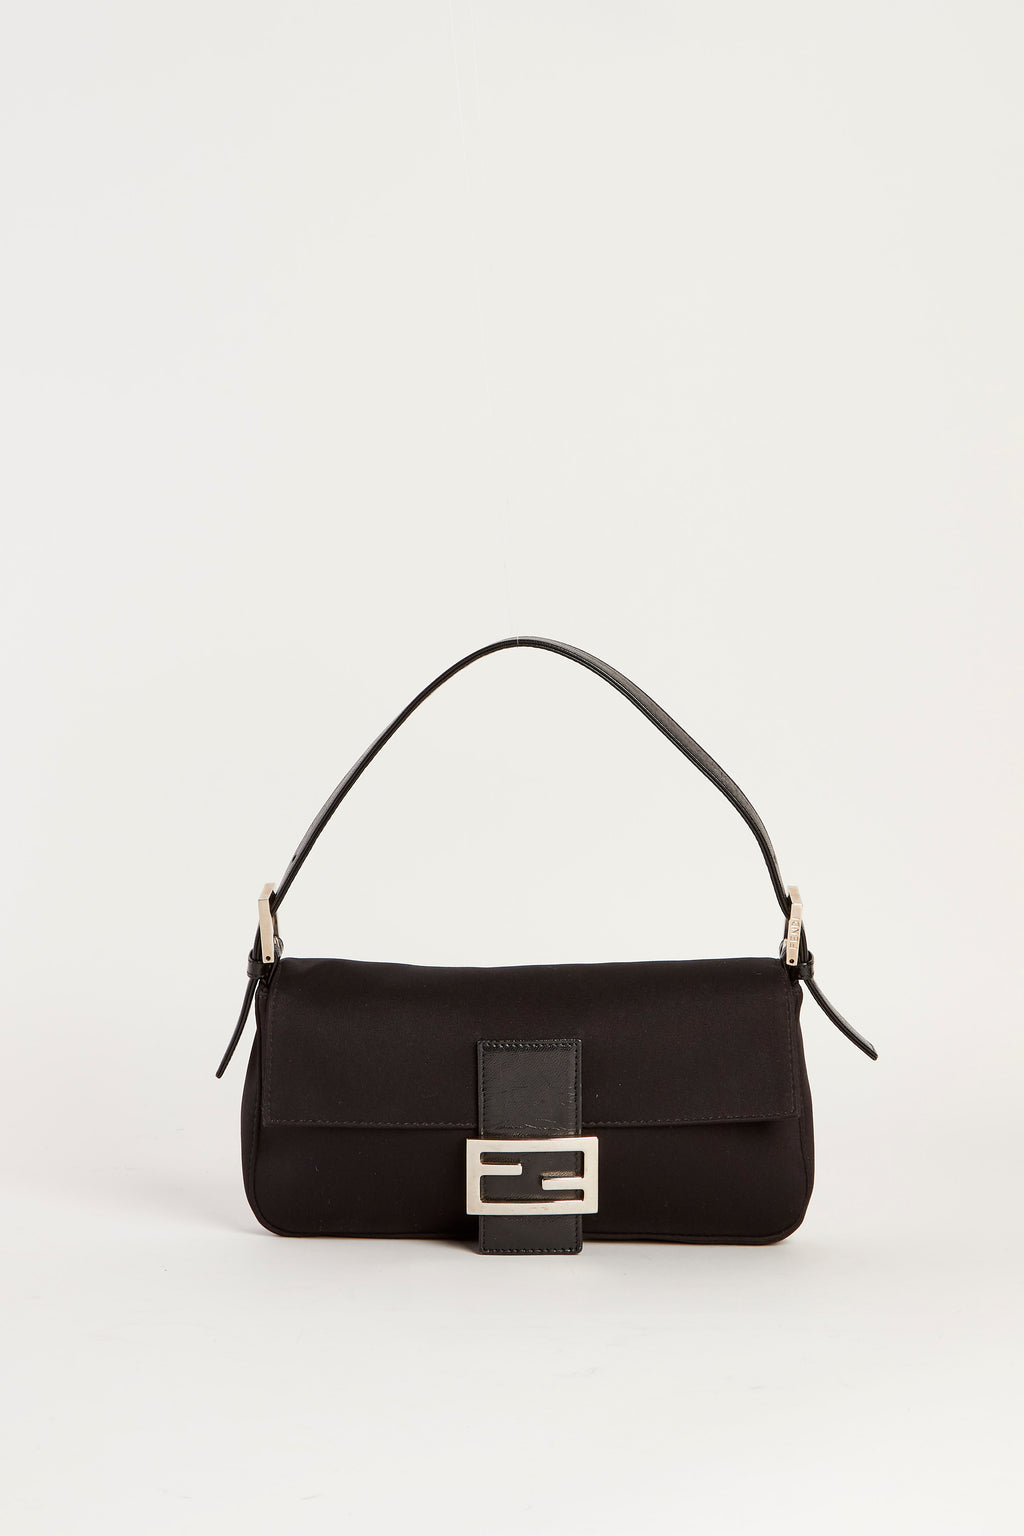 Vintage Fendi Black Neoprene Baguette Shoulder Bag